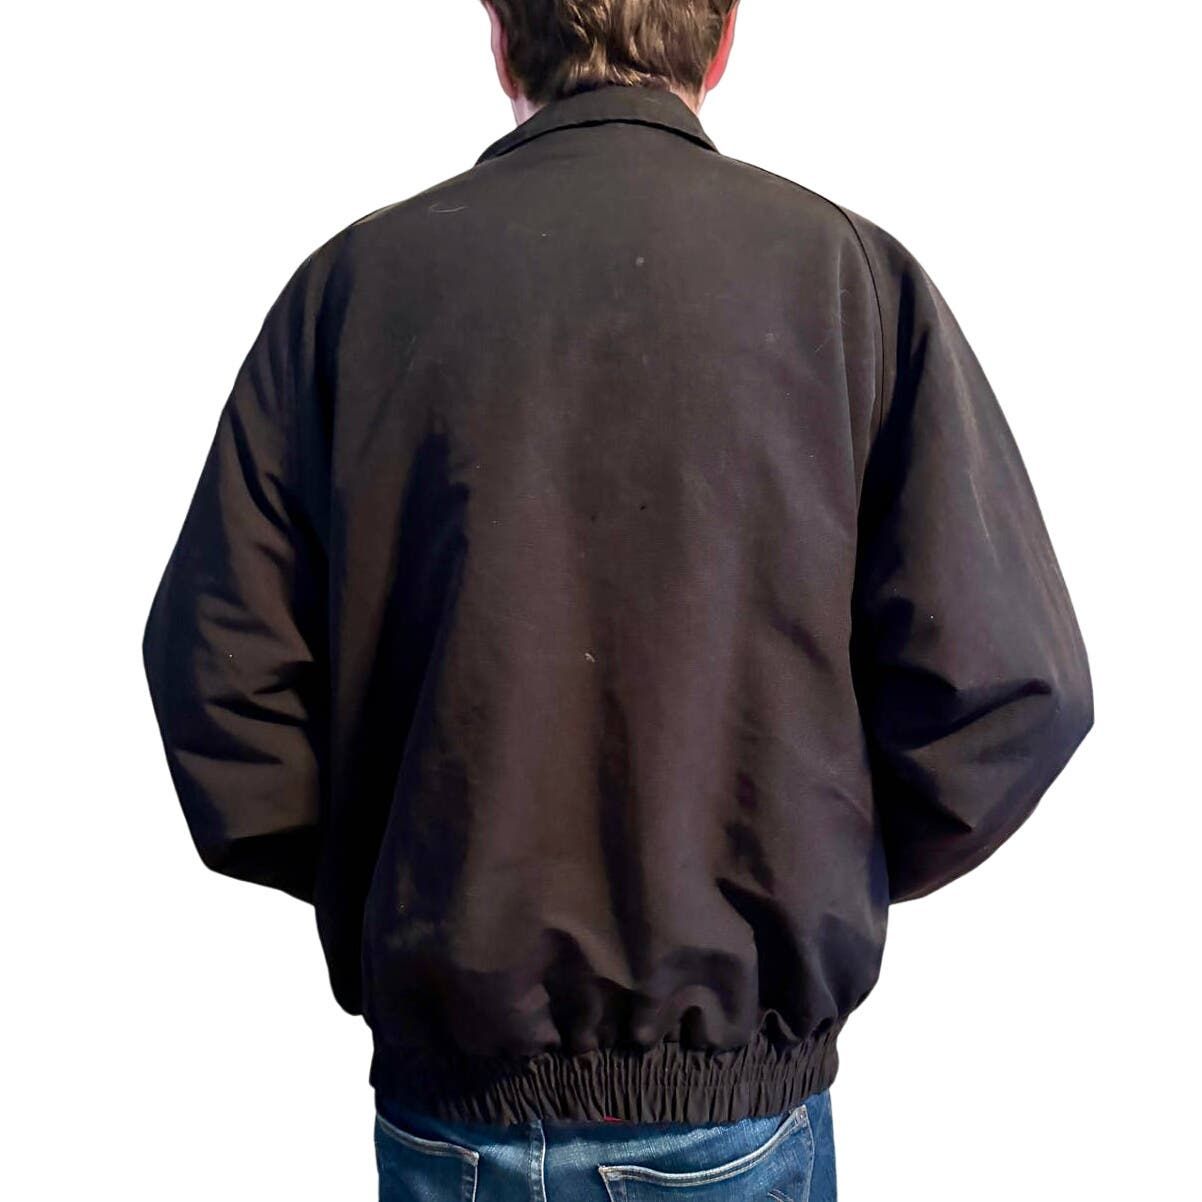 Carhartt Vintage Carhartt Workshield Jacket Fleece Lined Black J72 Size US XL / EU 56 / 4 - 3 Thumbnail